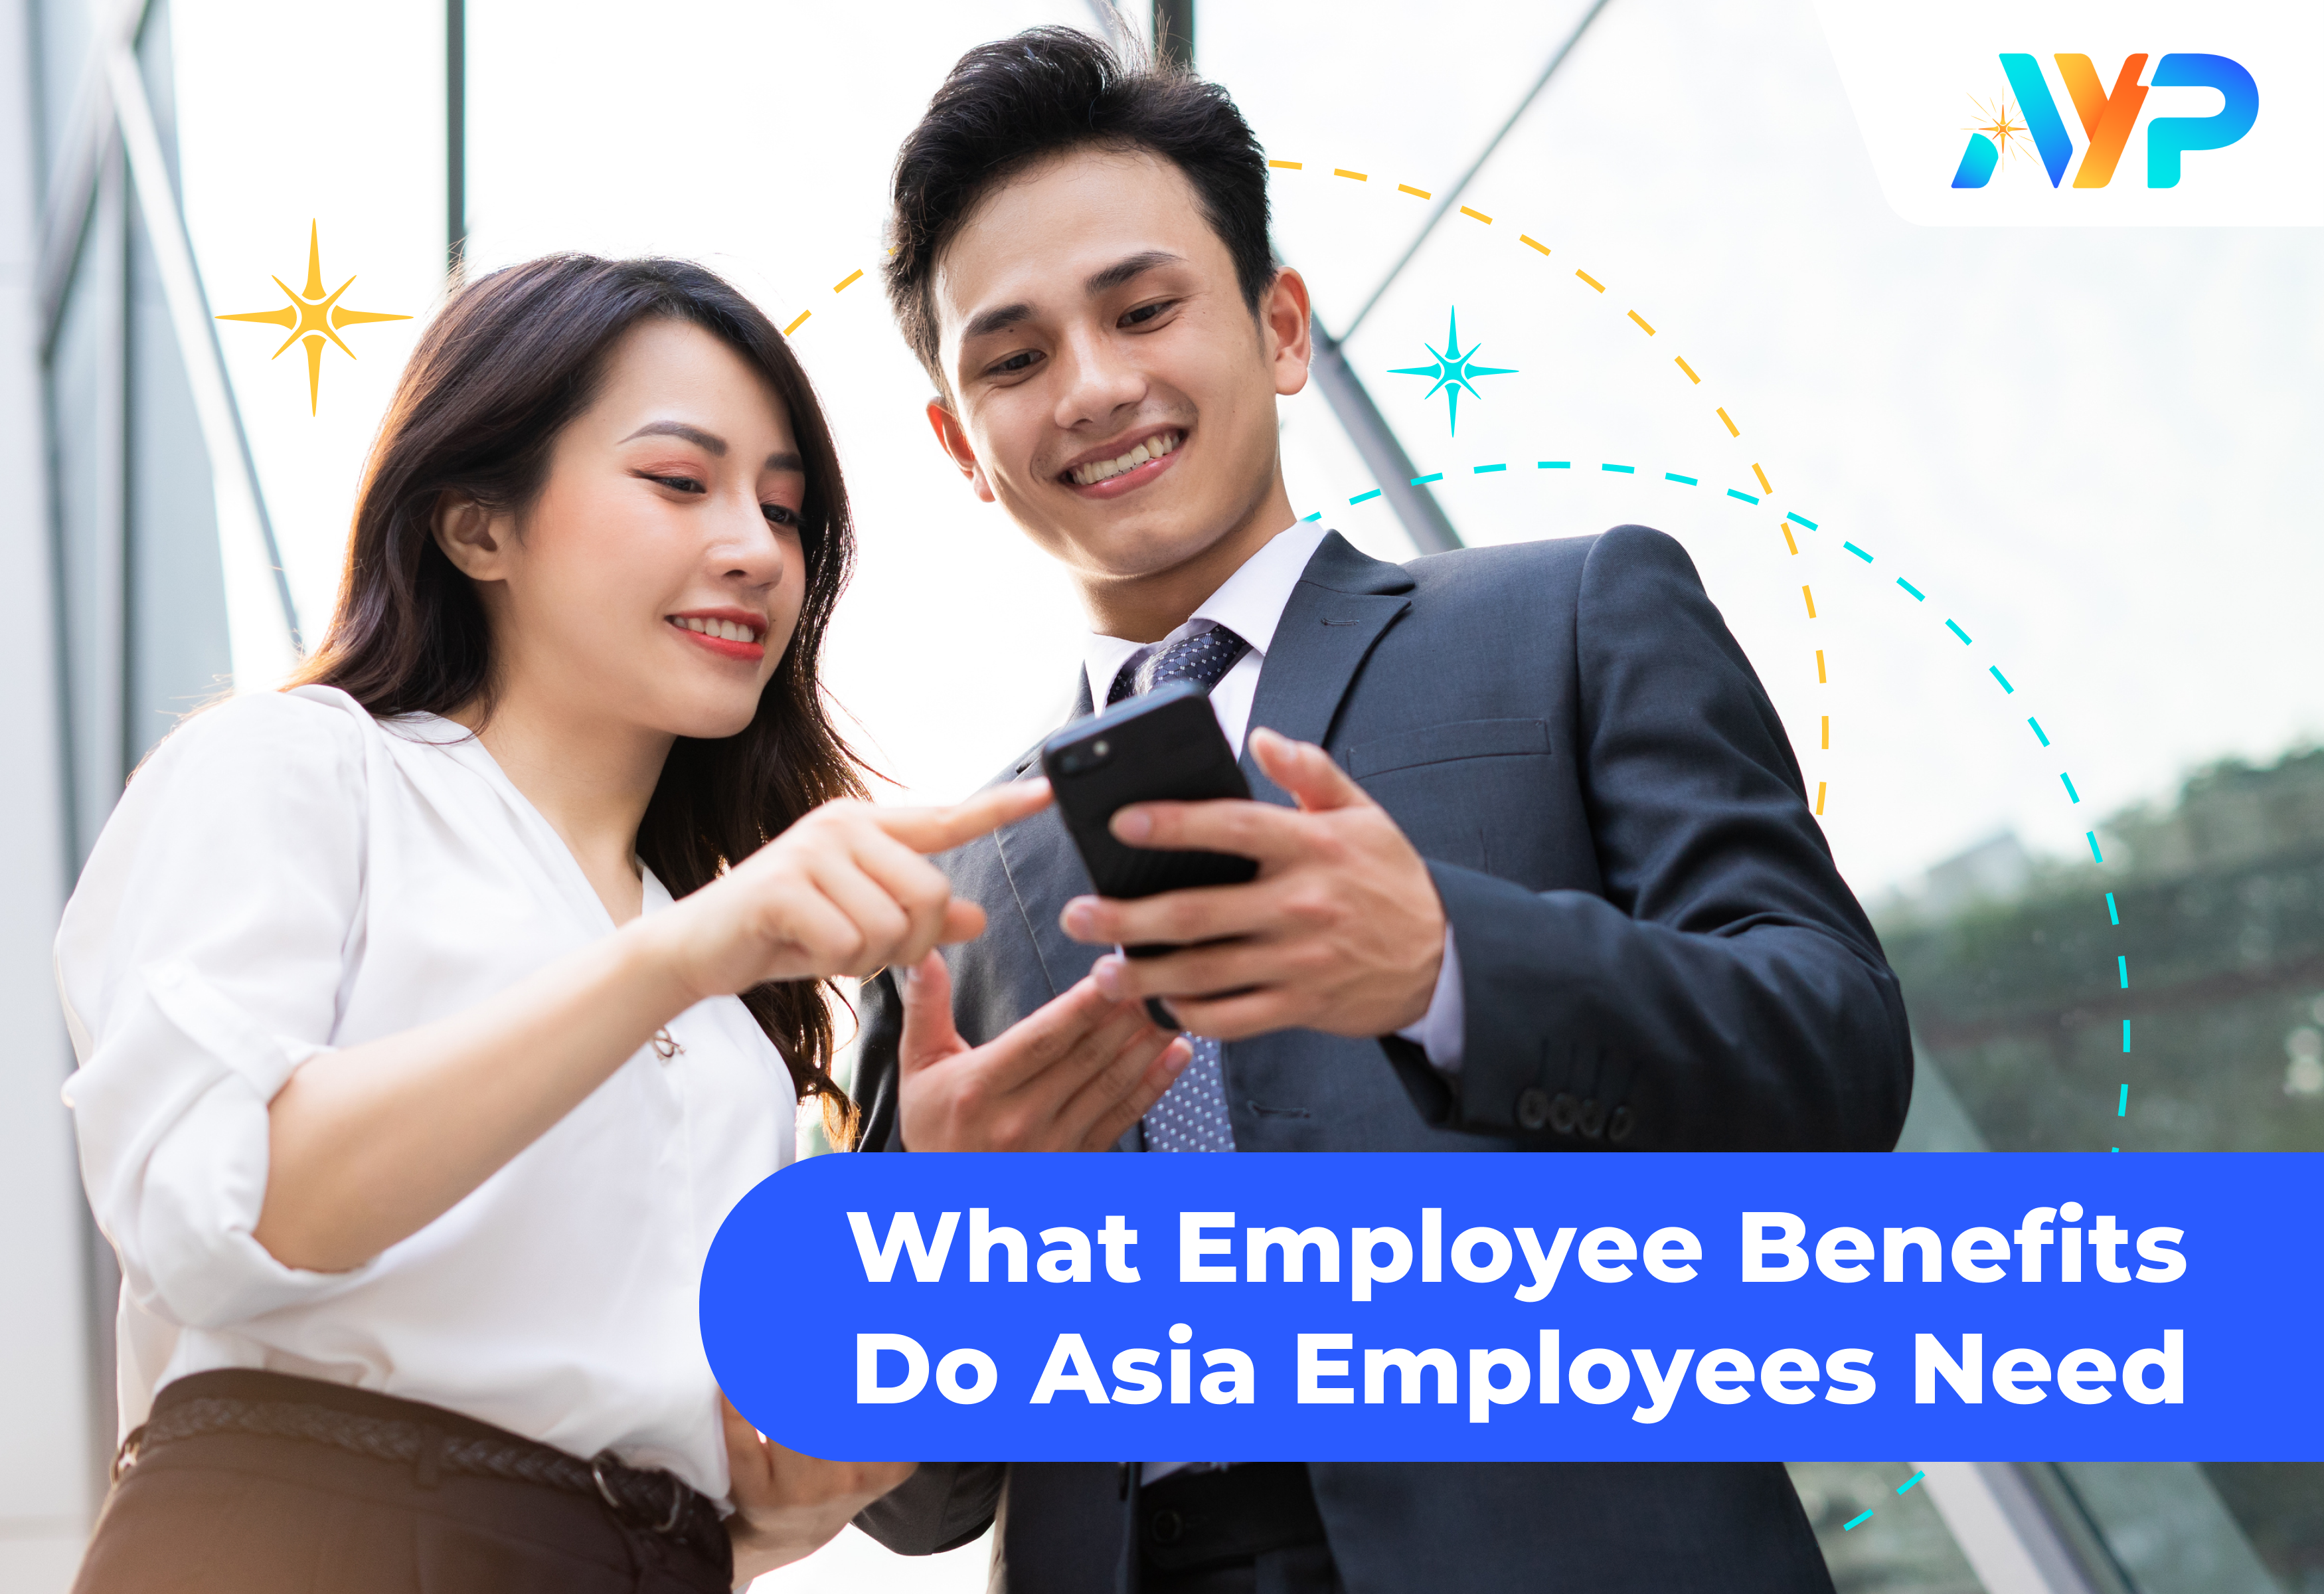 Thumbnail-Employee-Benefits-AYP-Blog